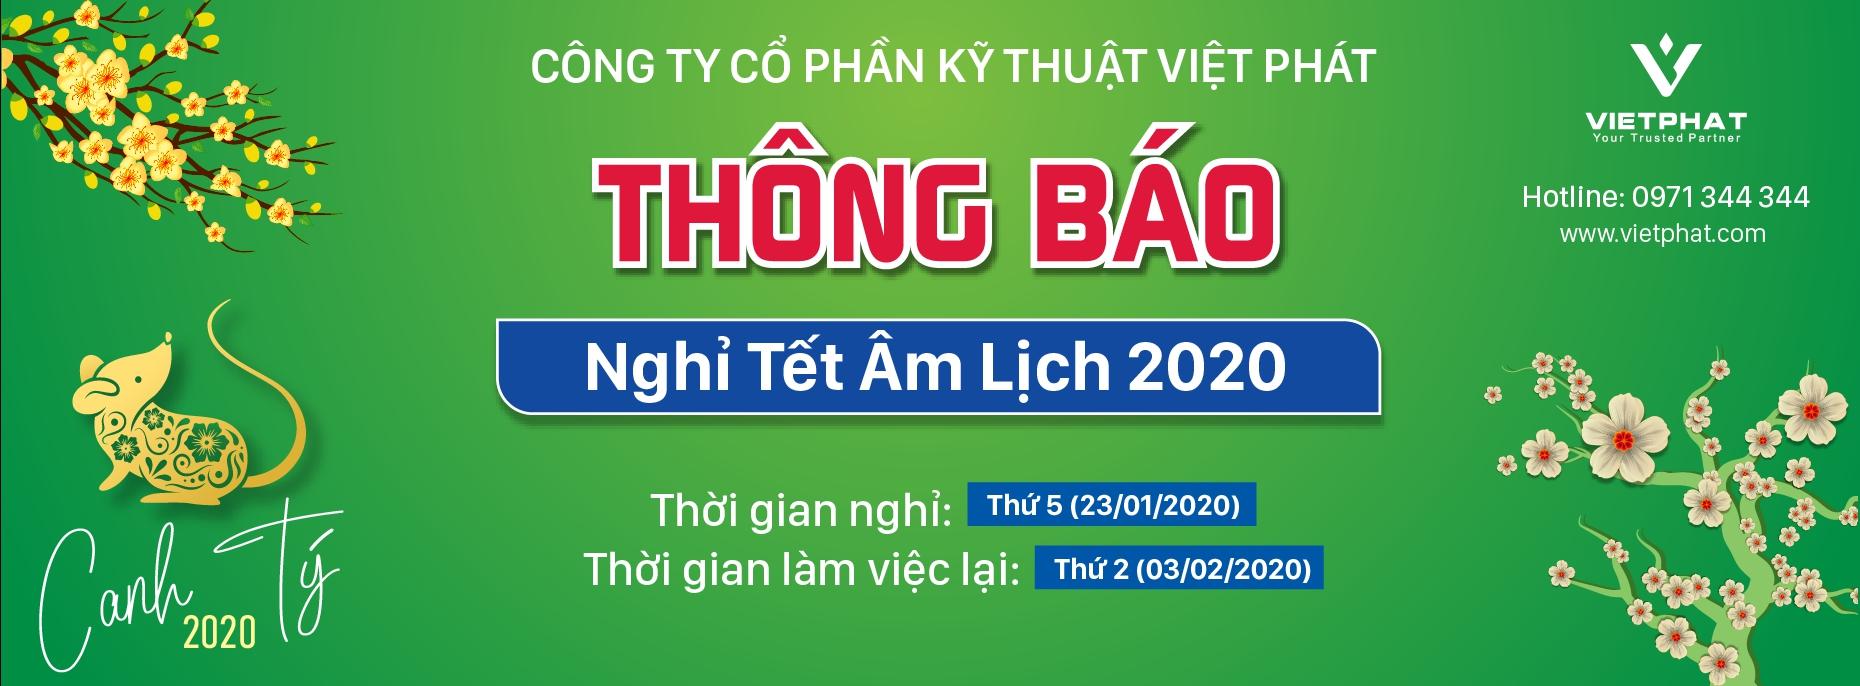 Việt Phát thông báo về việc lịch nghỉ tết canh tý 2020 tới khách hàng và đối tác